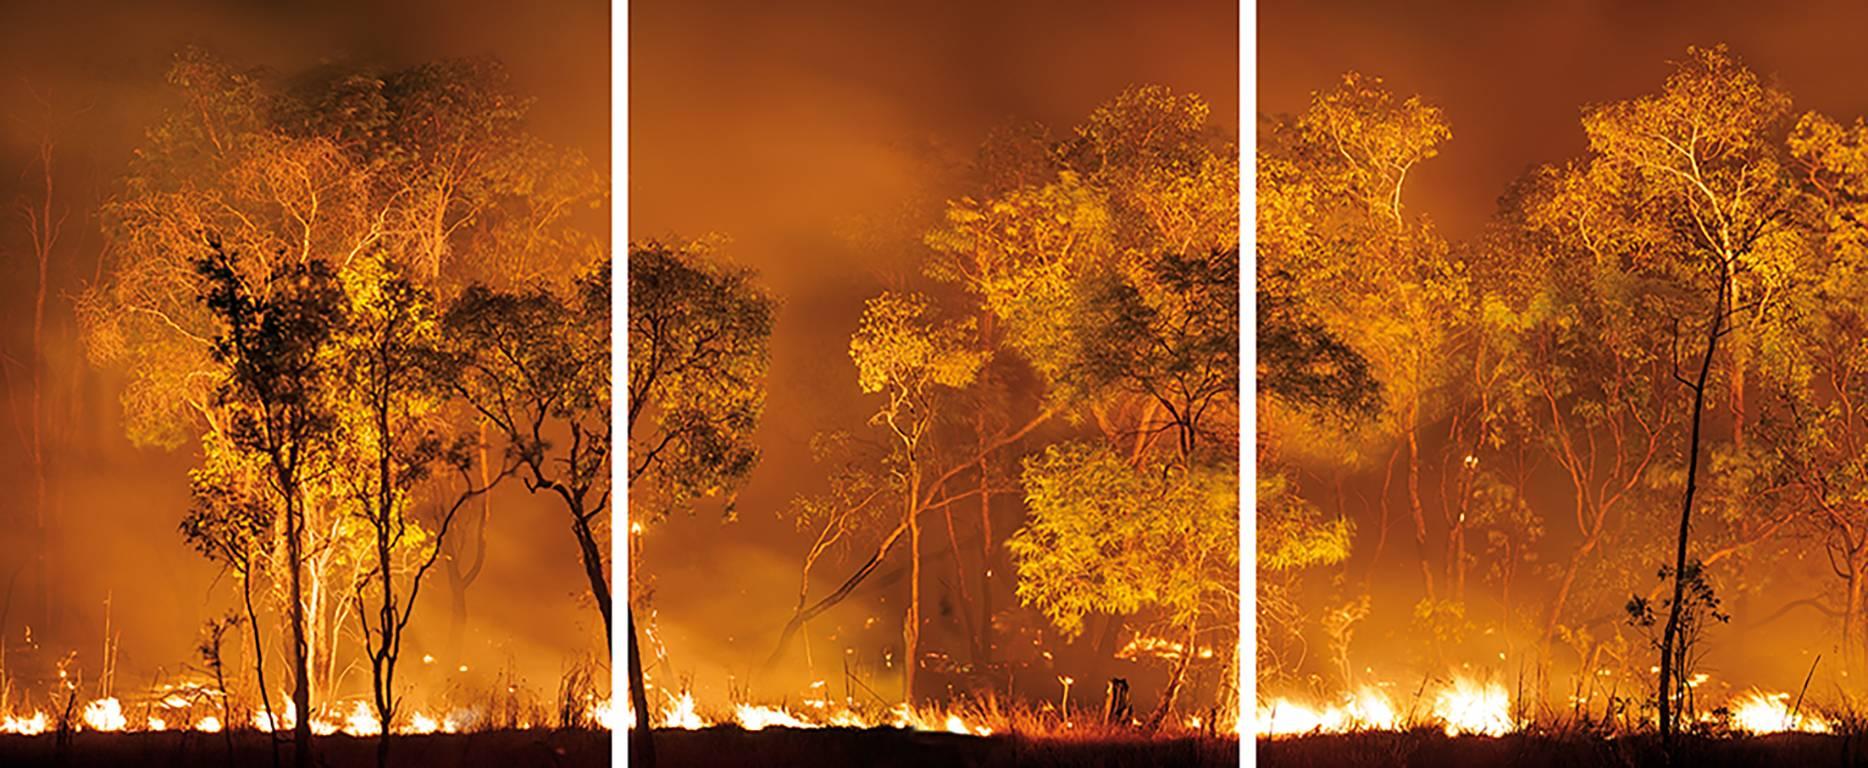 Bushfire Lit to Clear Land, Australien, 2008